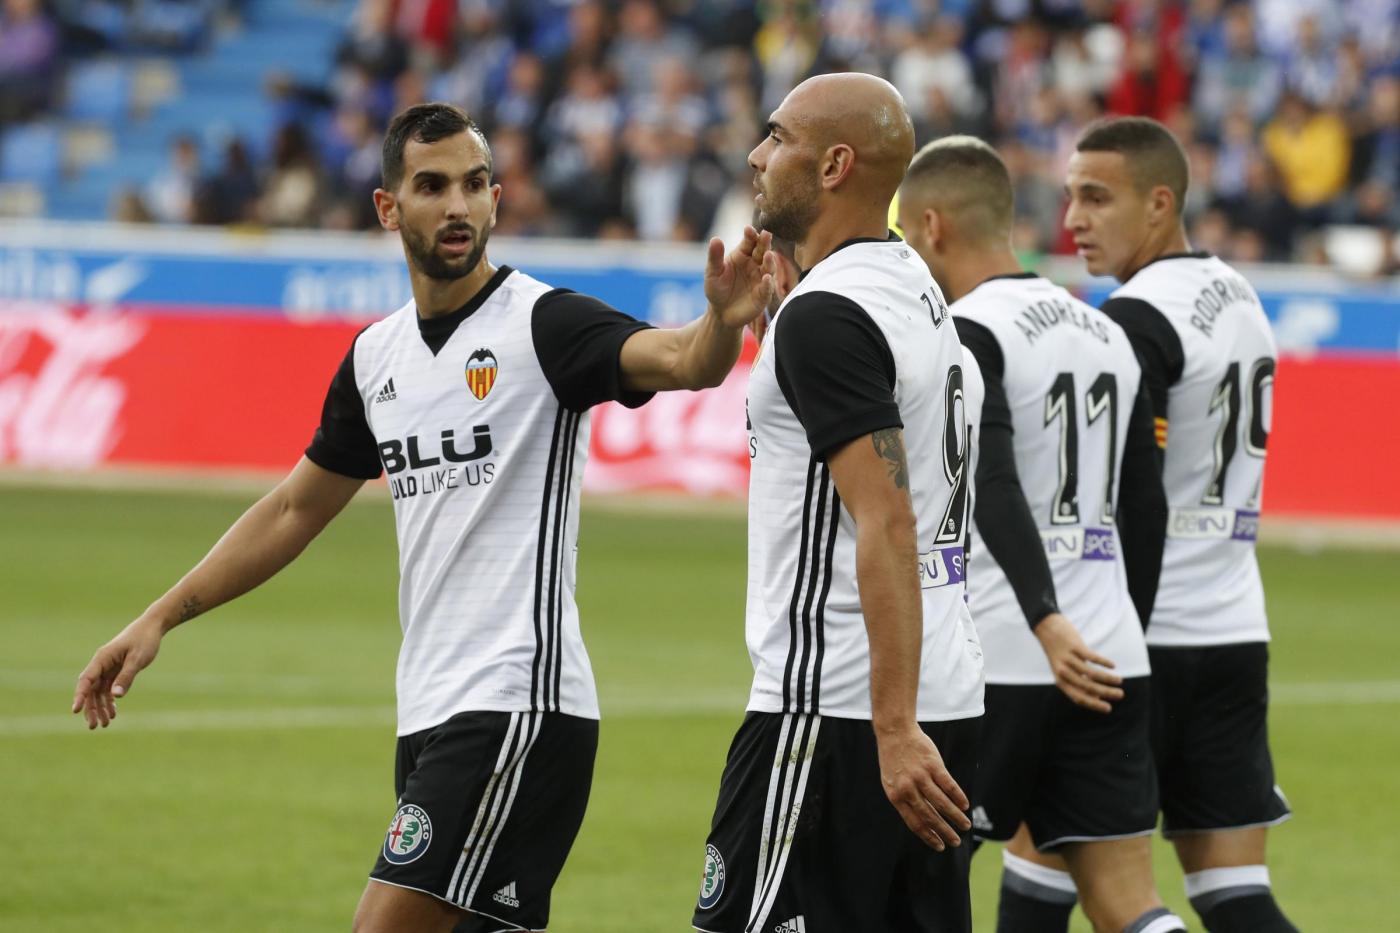 Champions League, Valencia-Young Boys 7 novembre: analisi e pronostico della giornata della fase a gironi della massima competizione europea